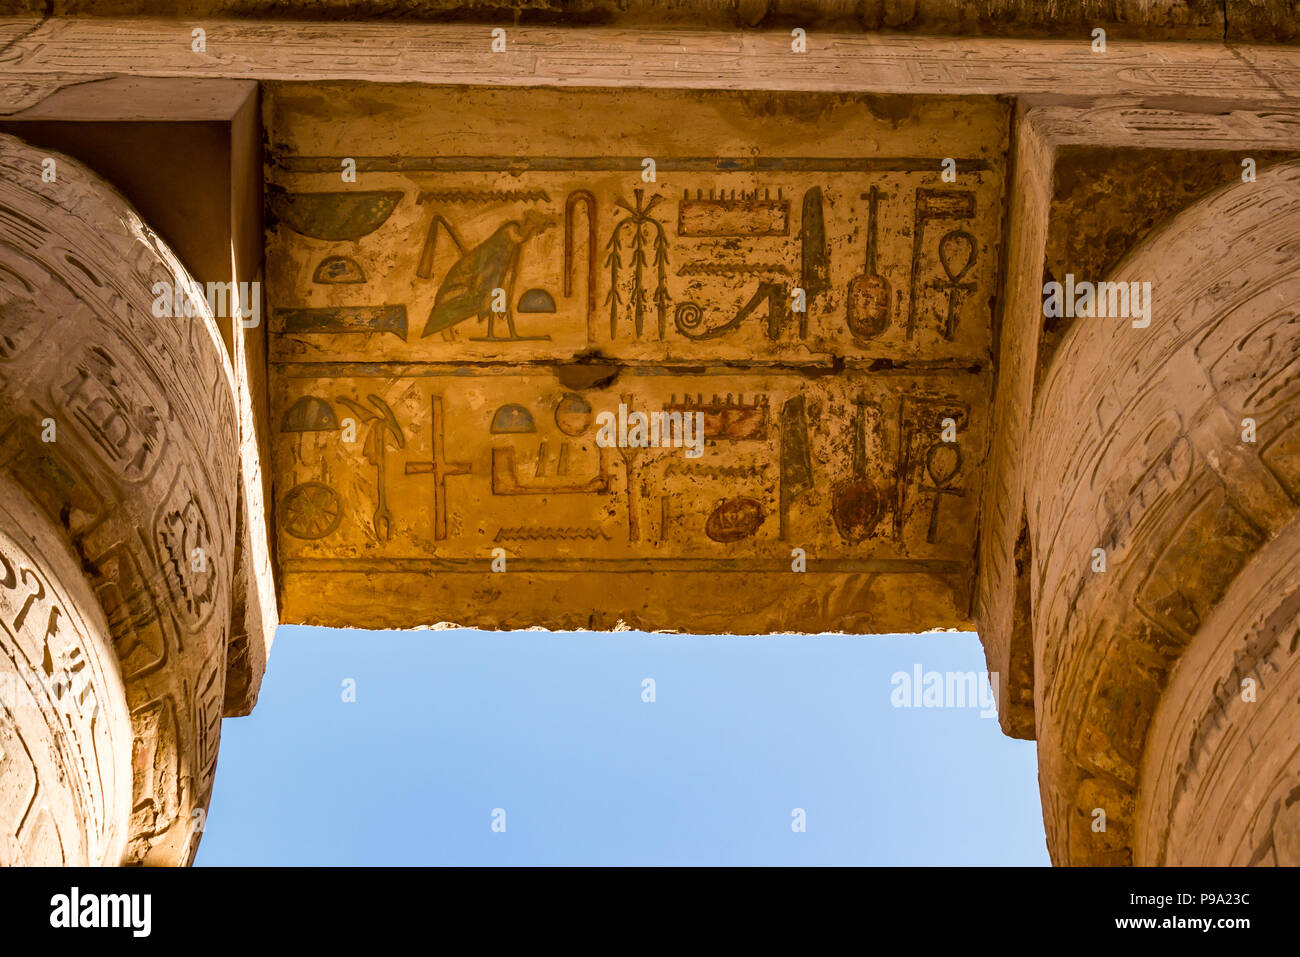 Hiéroglyphes égyptiens peints en couleurs au sommet des colonnes, grande enceinte hypostyle d'Amun Ra, temple de Karnak, Louxor, Égypte, Afrique Banque D'Images